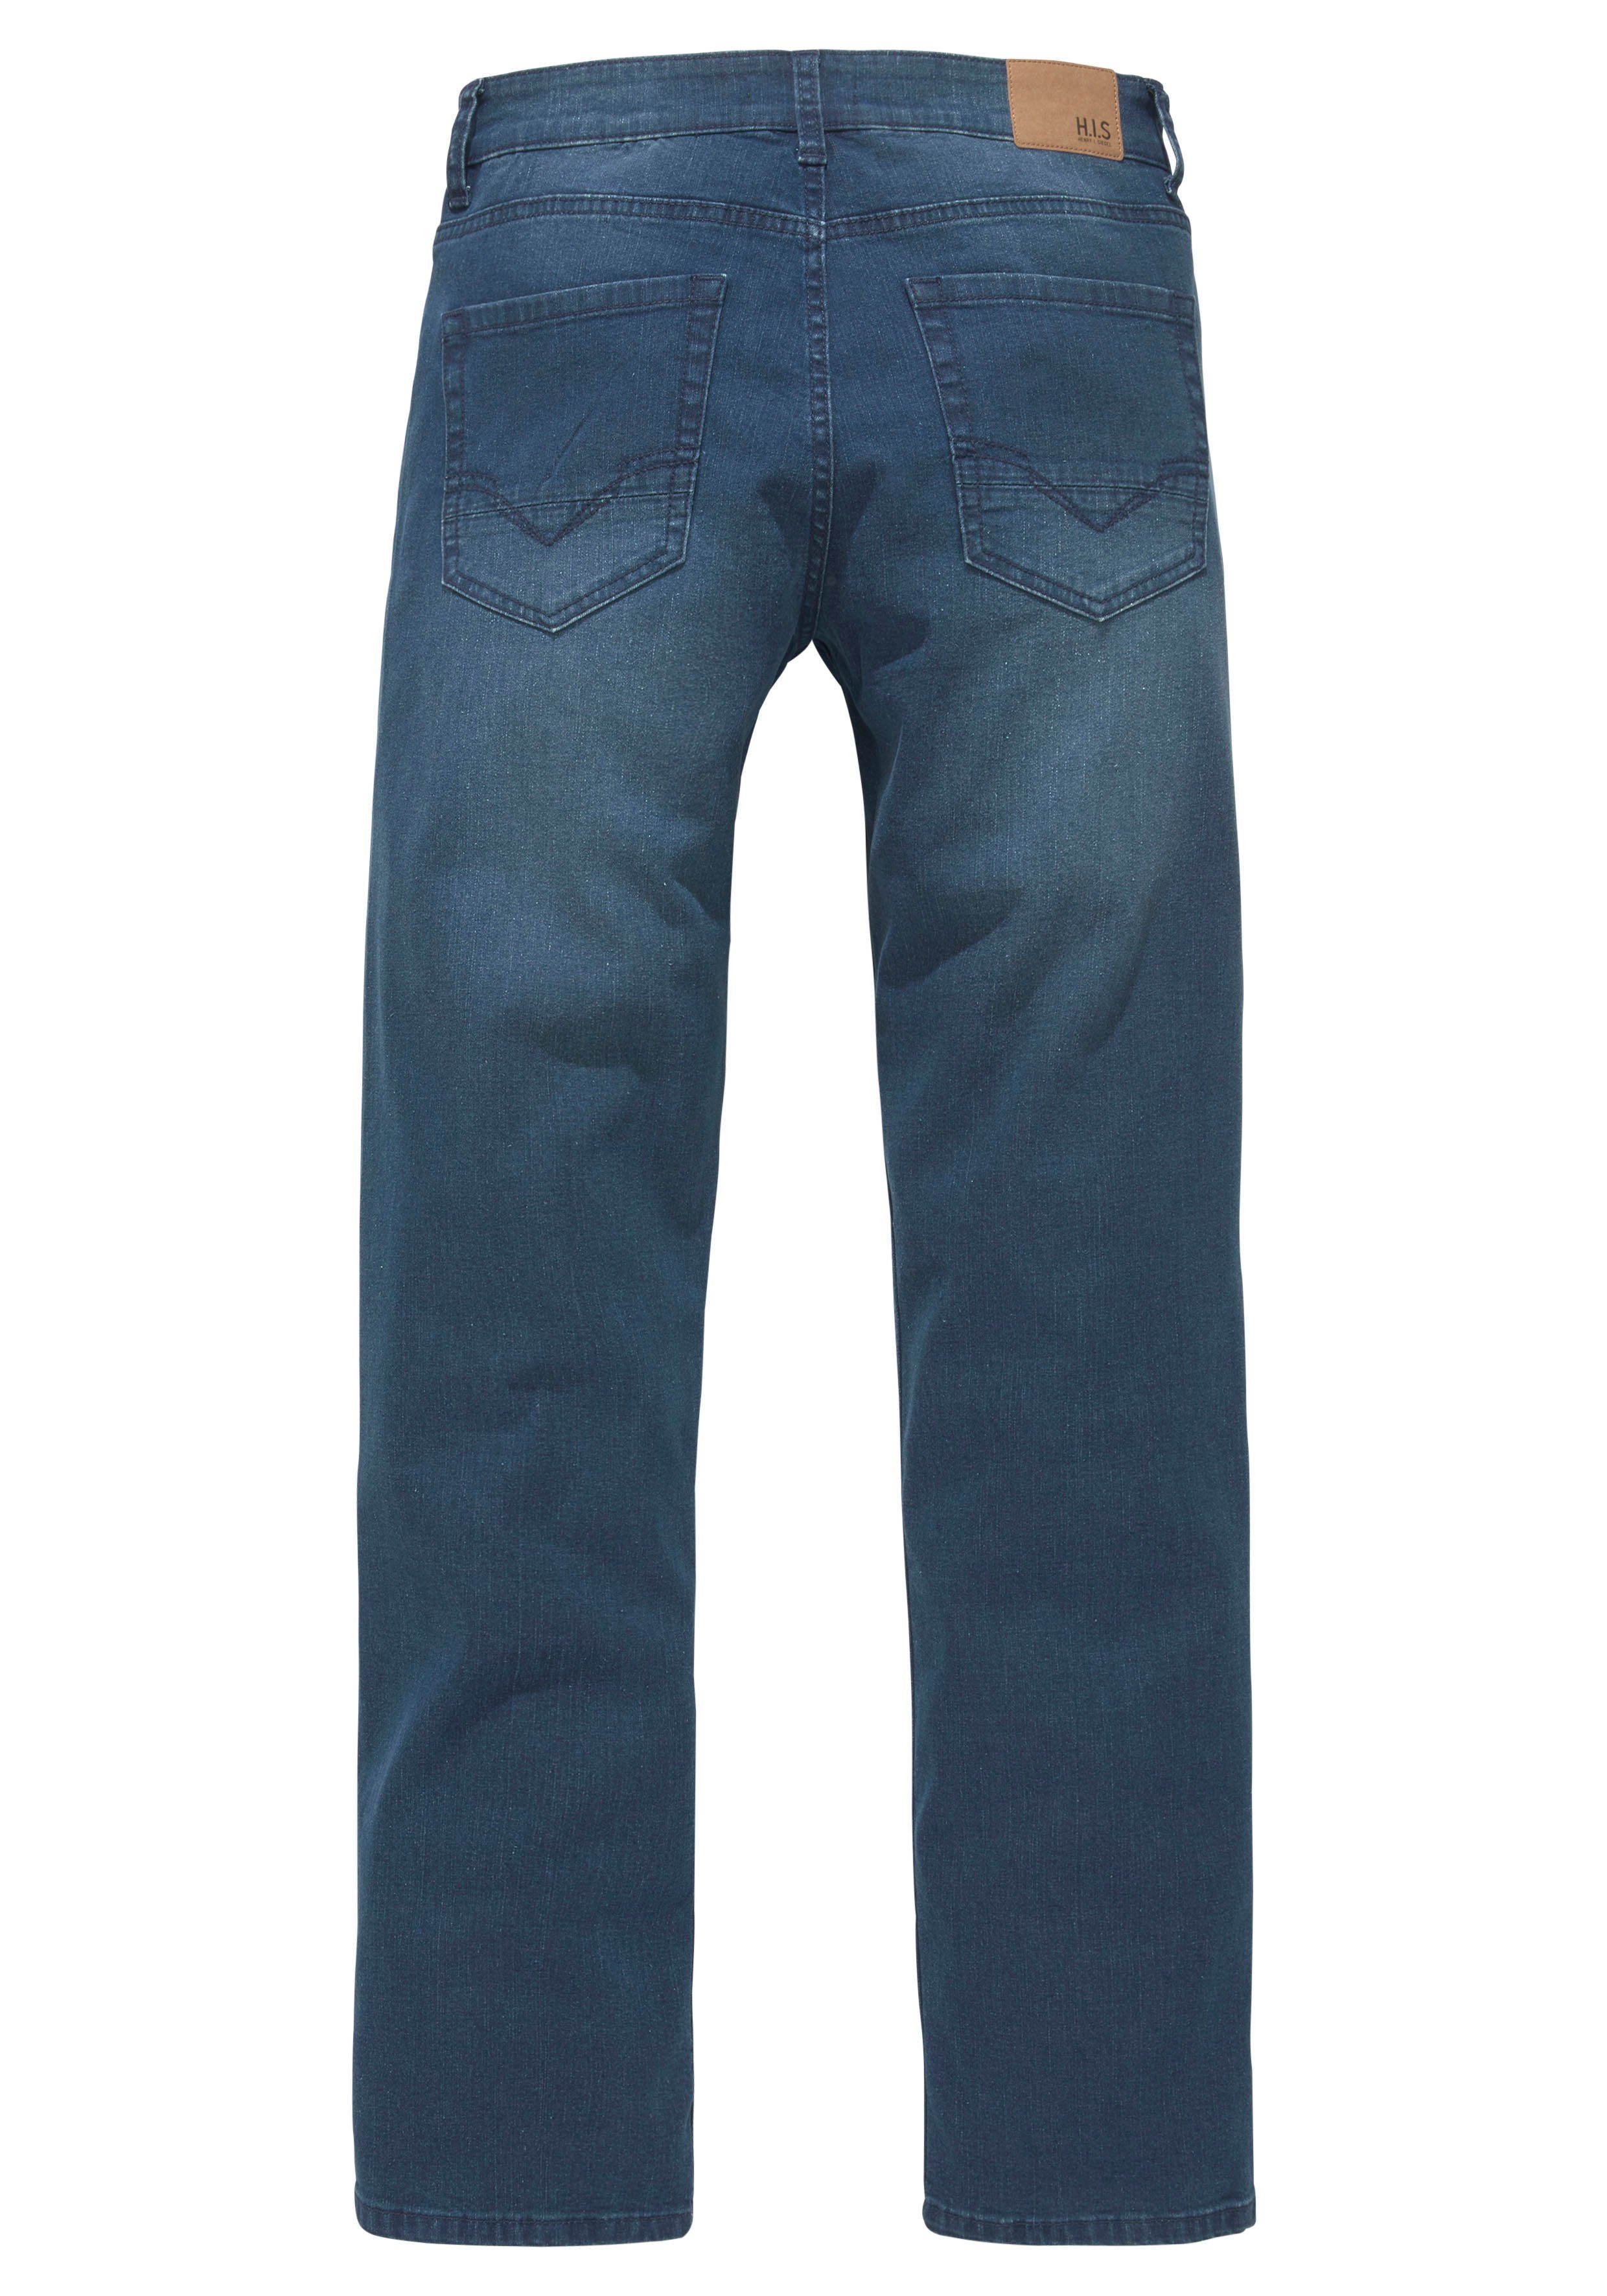 wassersparende Produktion Ozon Slim-fit-Jeans durch Ökologische, Wash H.I.S FLUSH darkblue-used